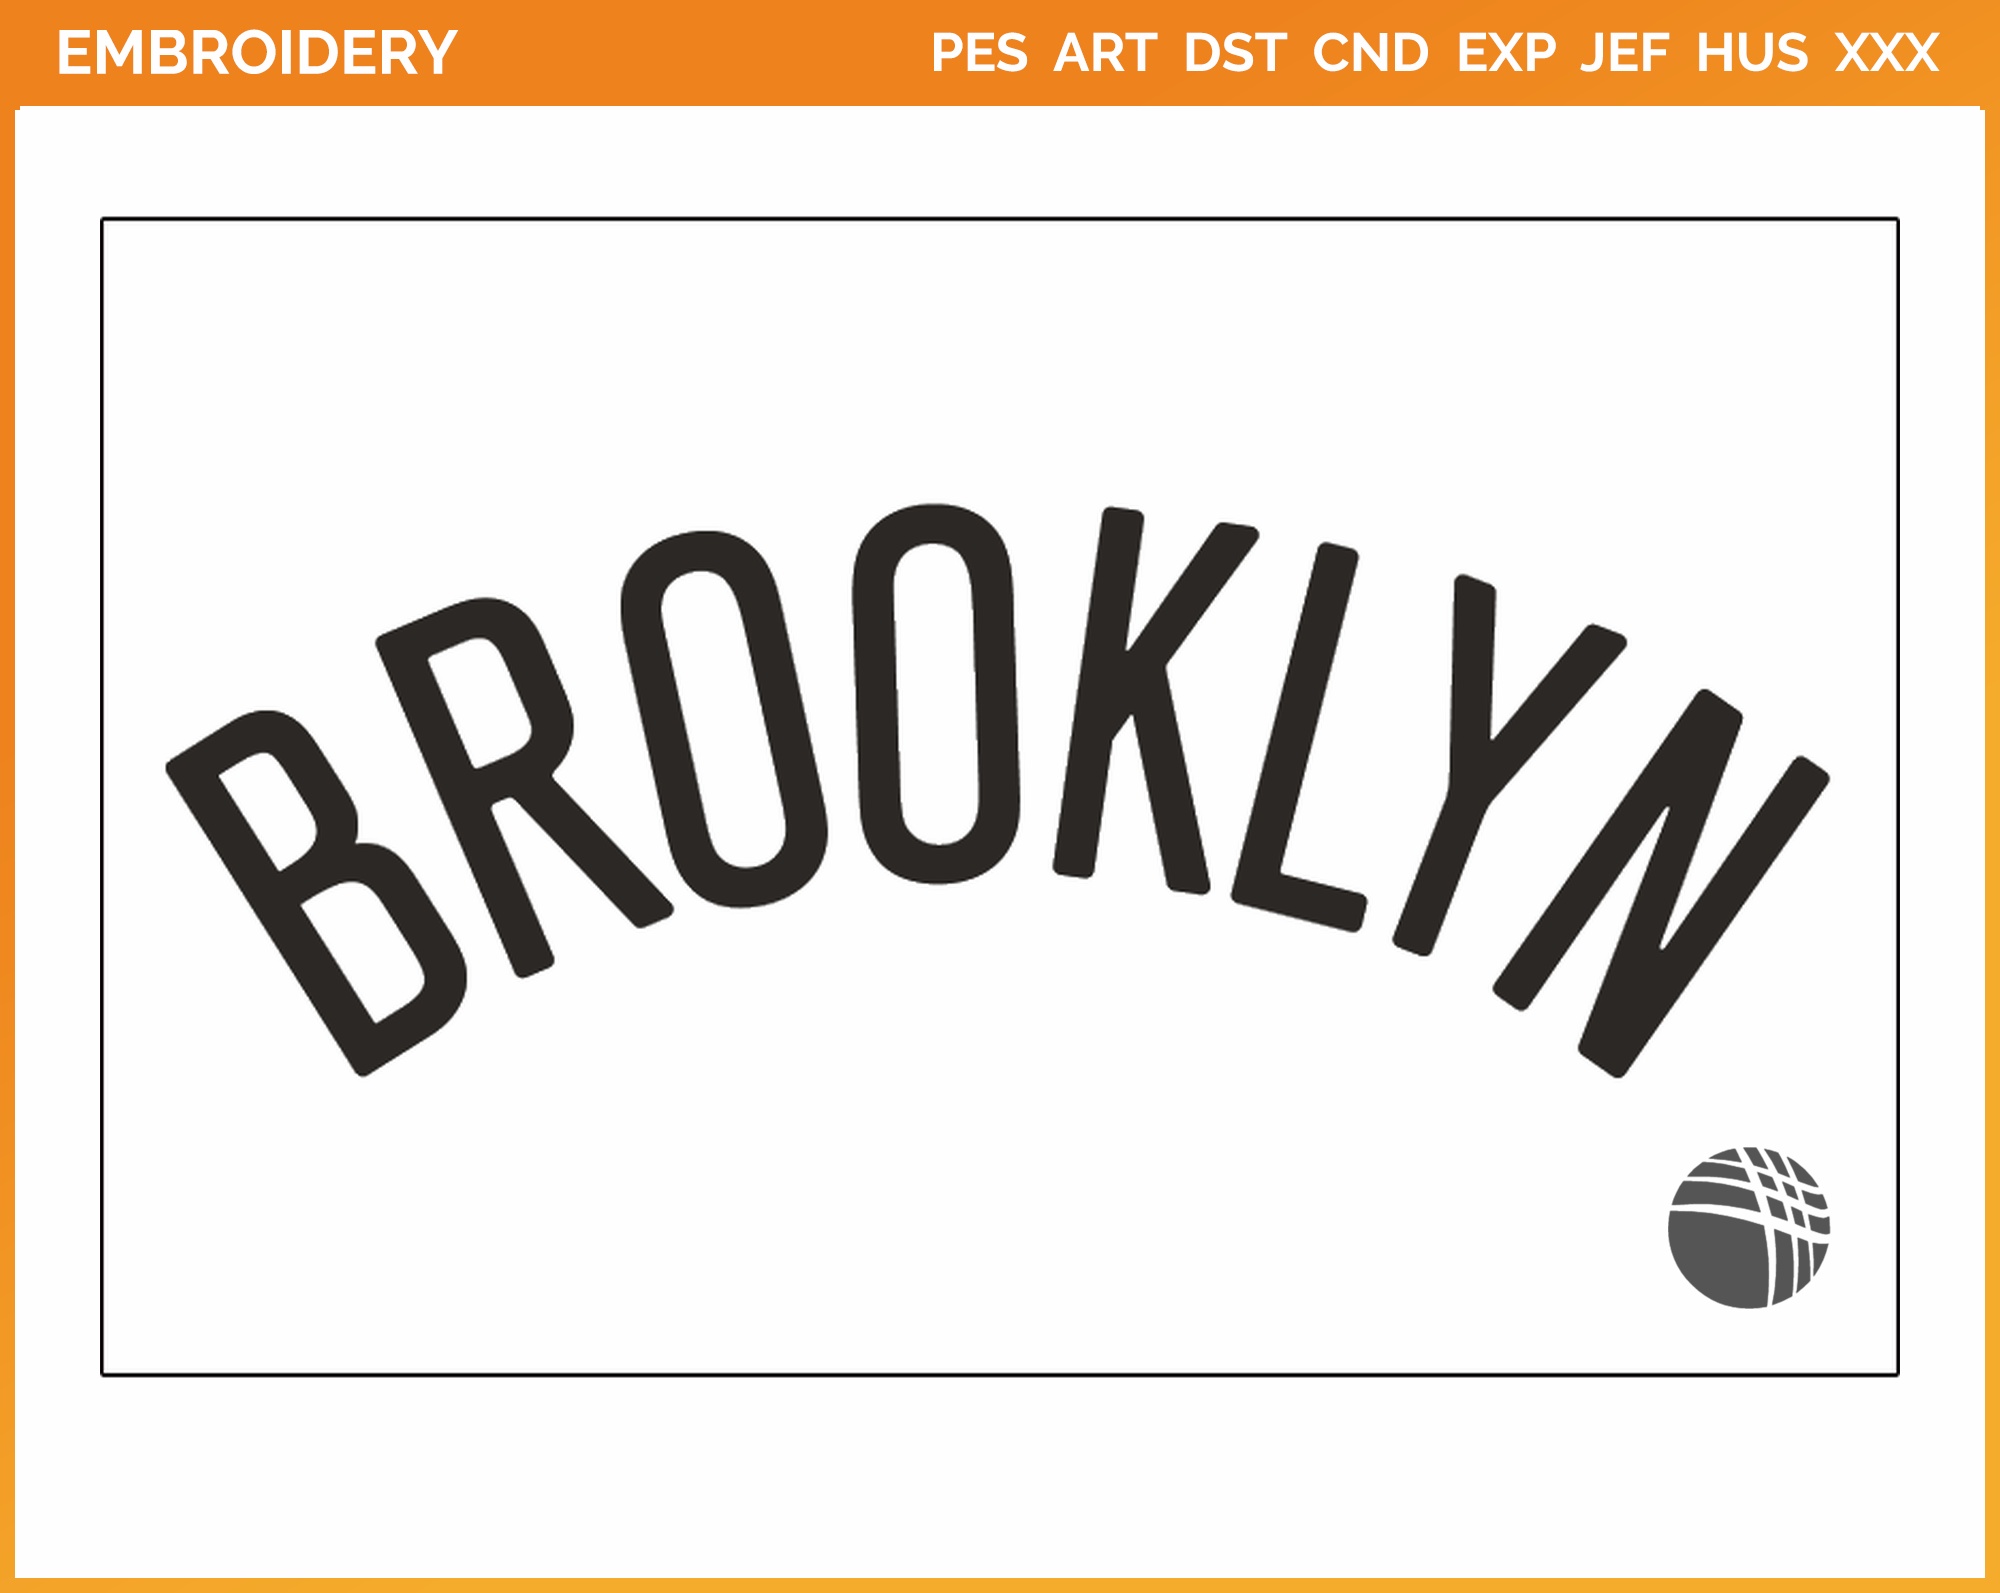 design brooklyn nets font